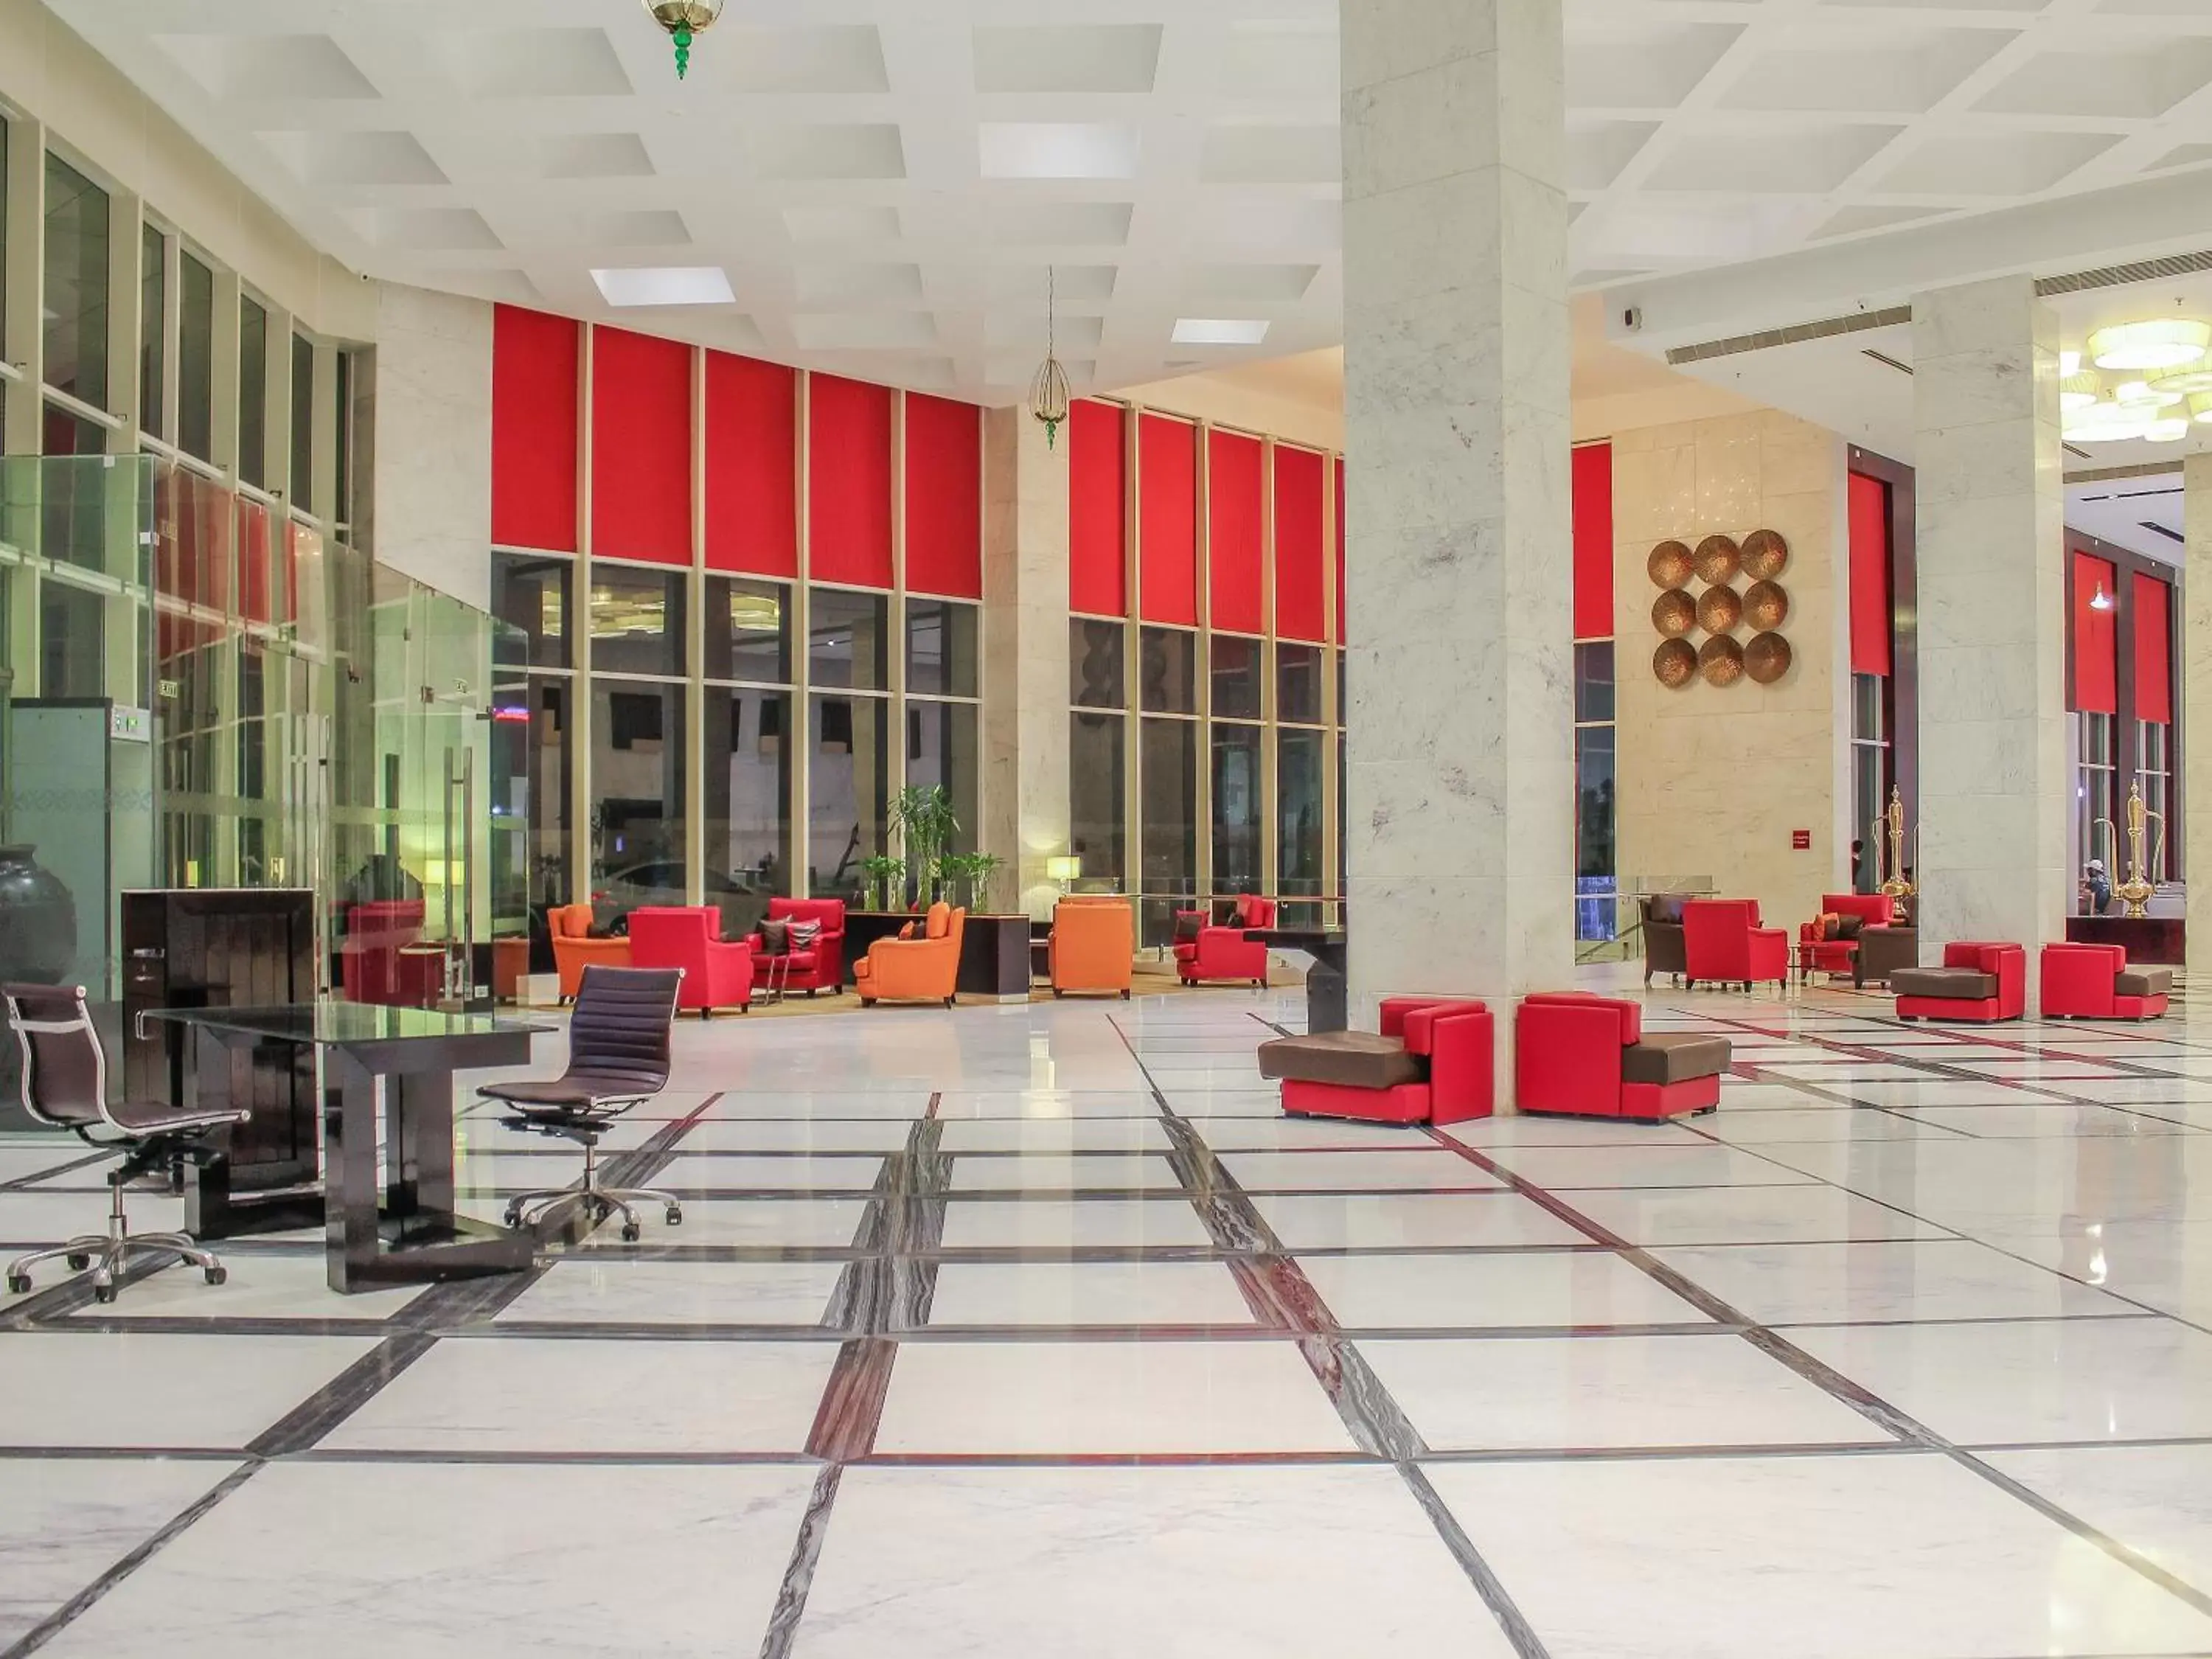 Lobby or reception in Radisson Hotel Agra